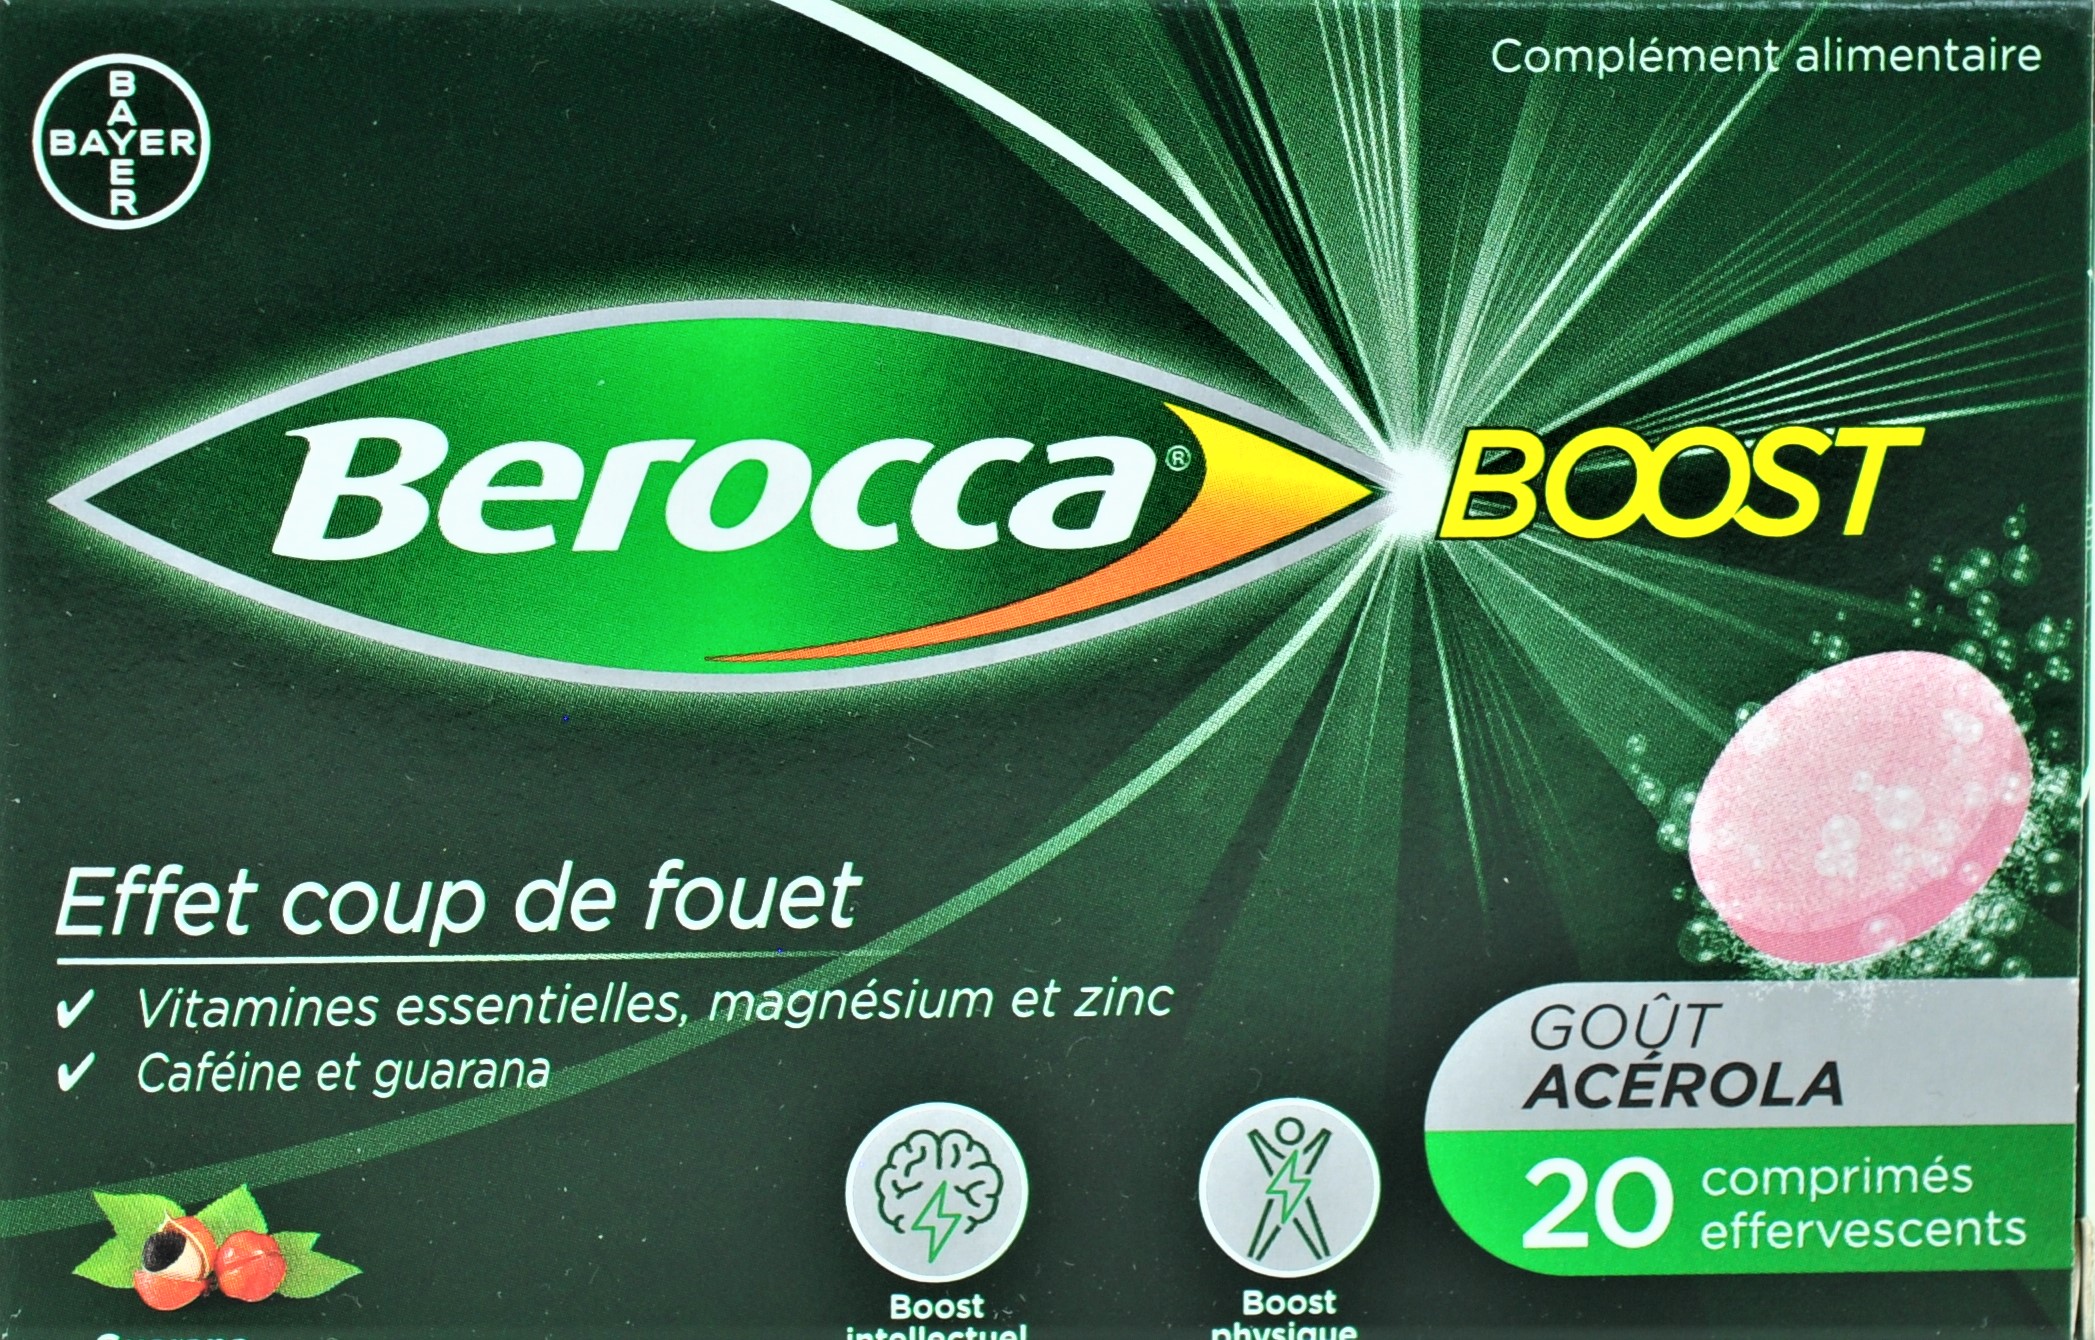 Berocca boost – 20 comprimés effervescents 3401553606027 : Pharmacie,  Homéopathie et parapharmacie française en ligne